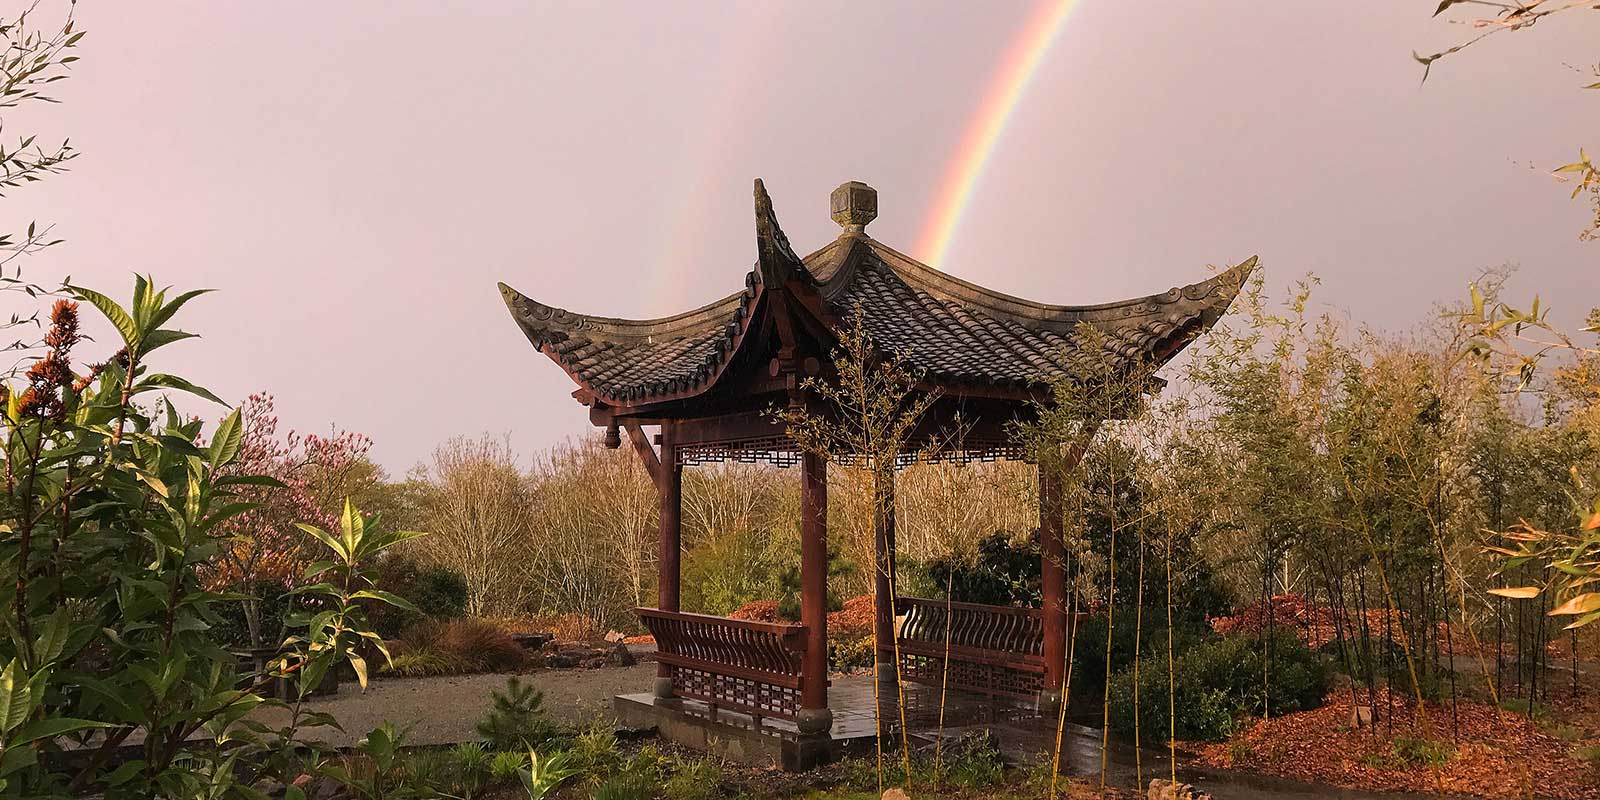 Seattle Chinese Garden